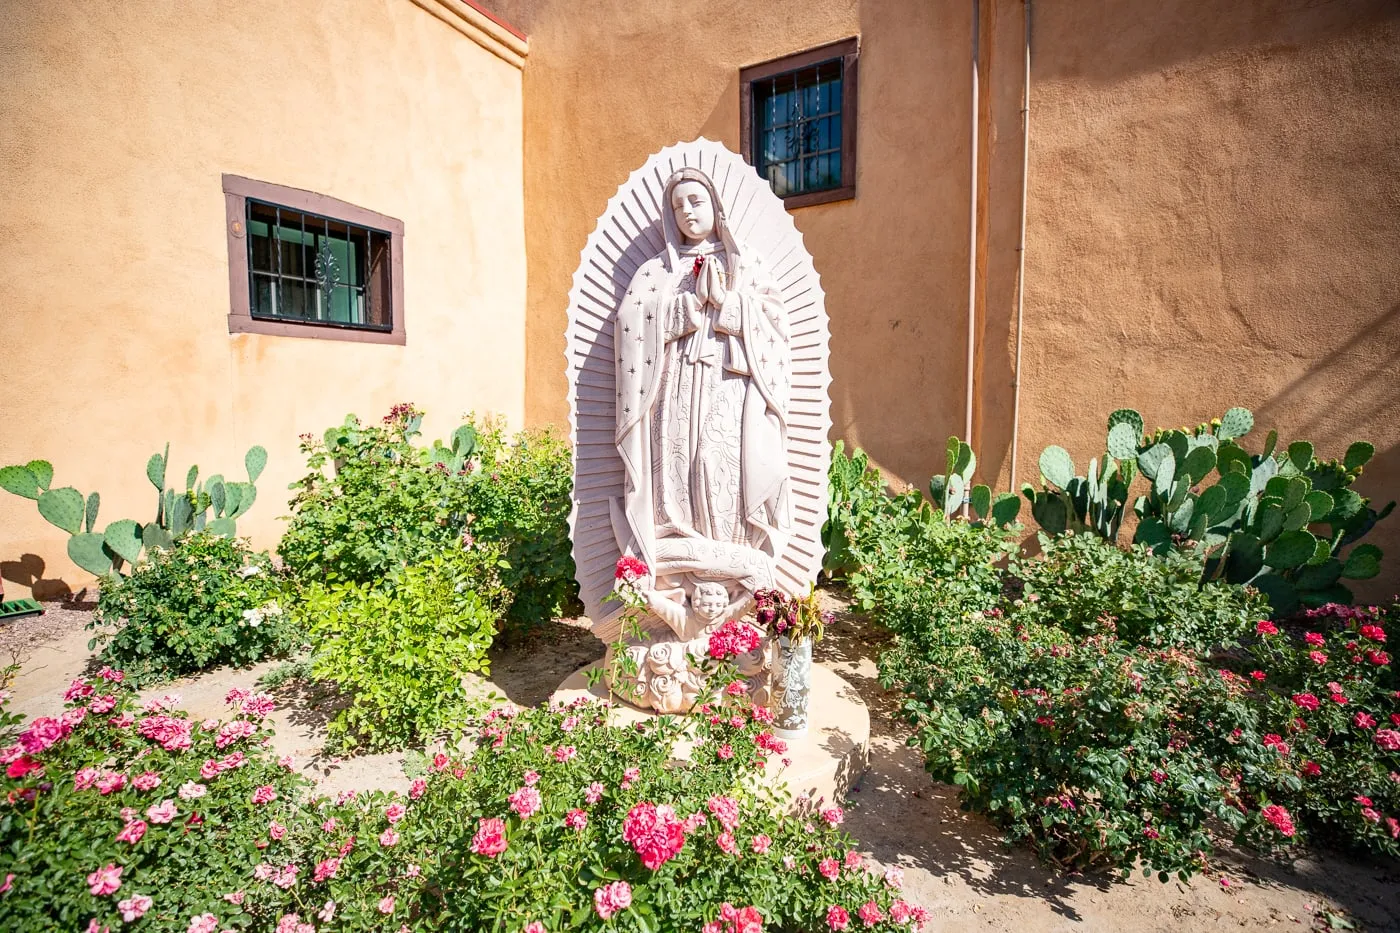 San Felipe de Neri Parish in Albuquerque, New Mexico